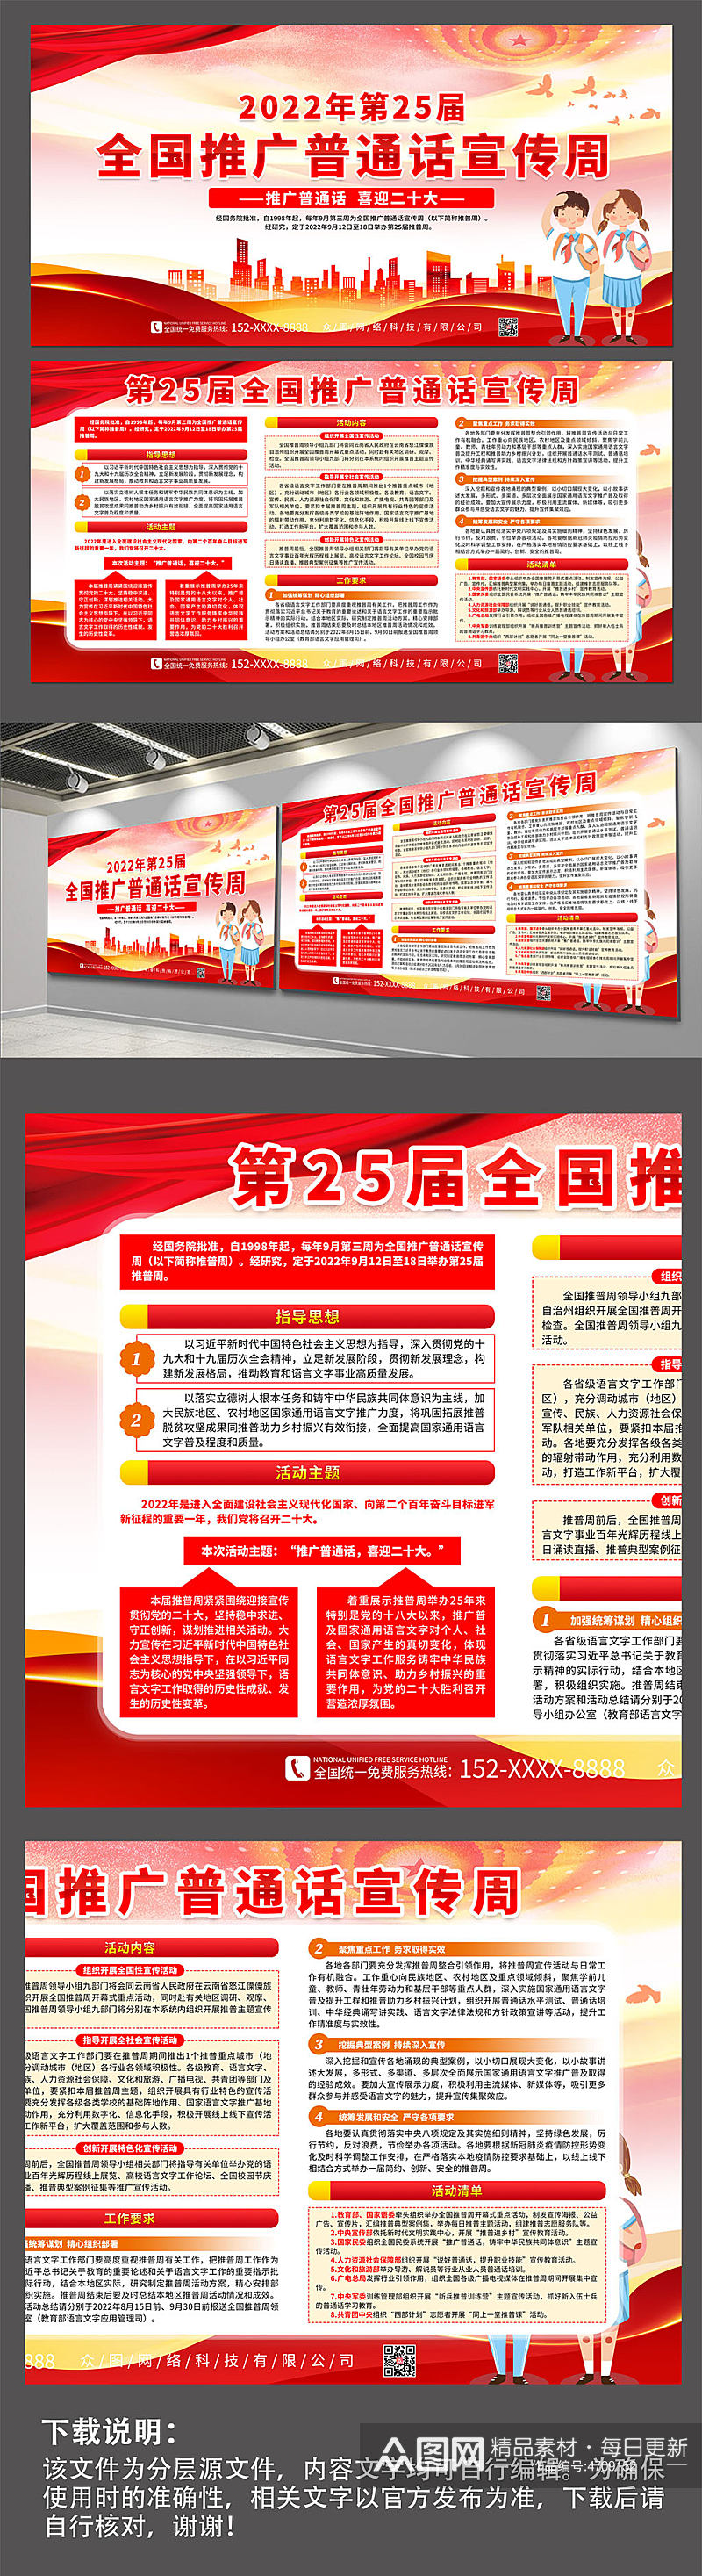 红色2022全国推广普通话宣传周展板素材